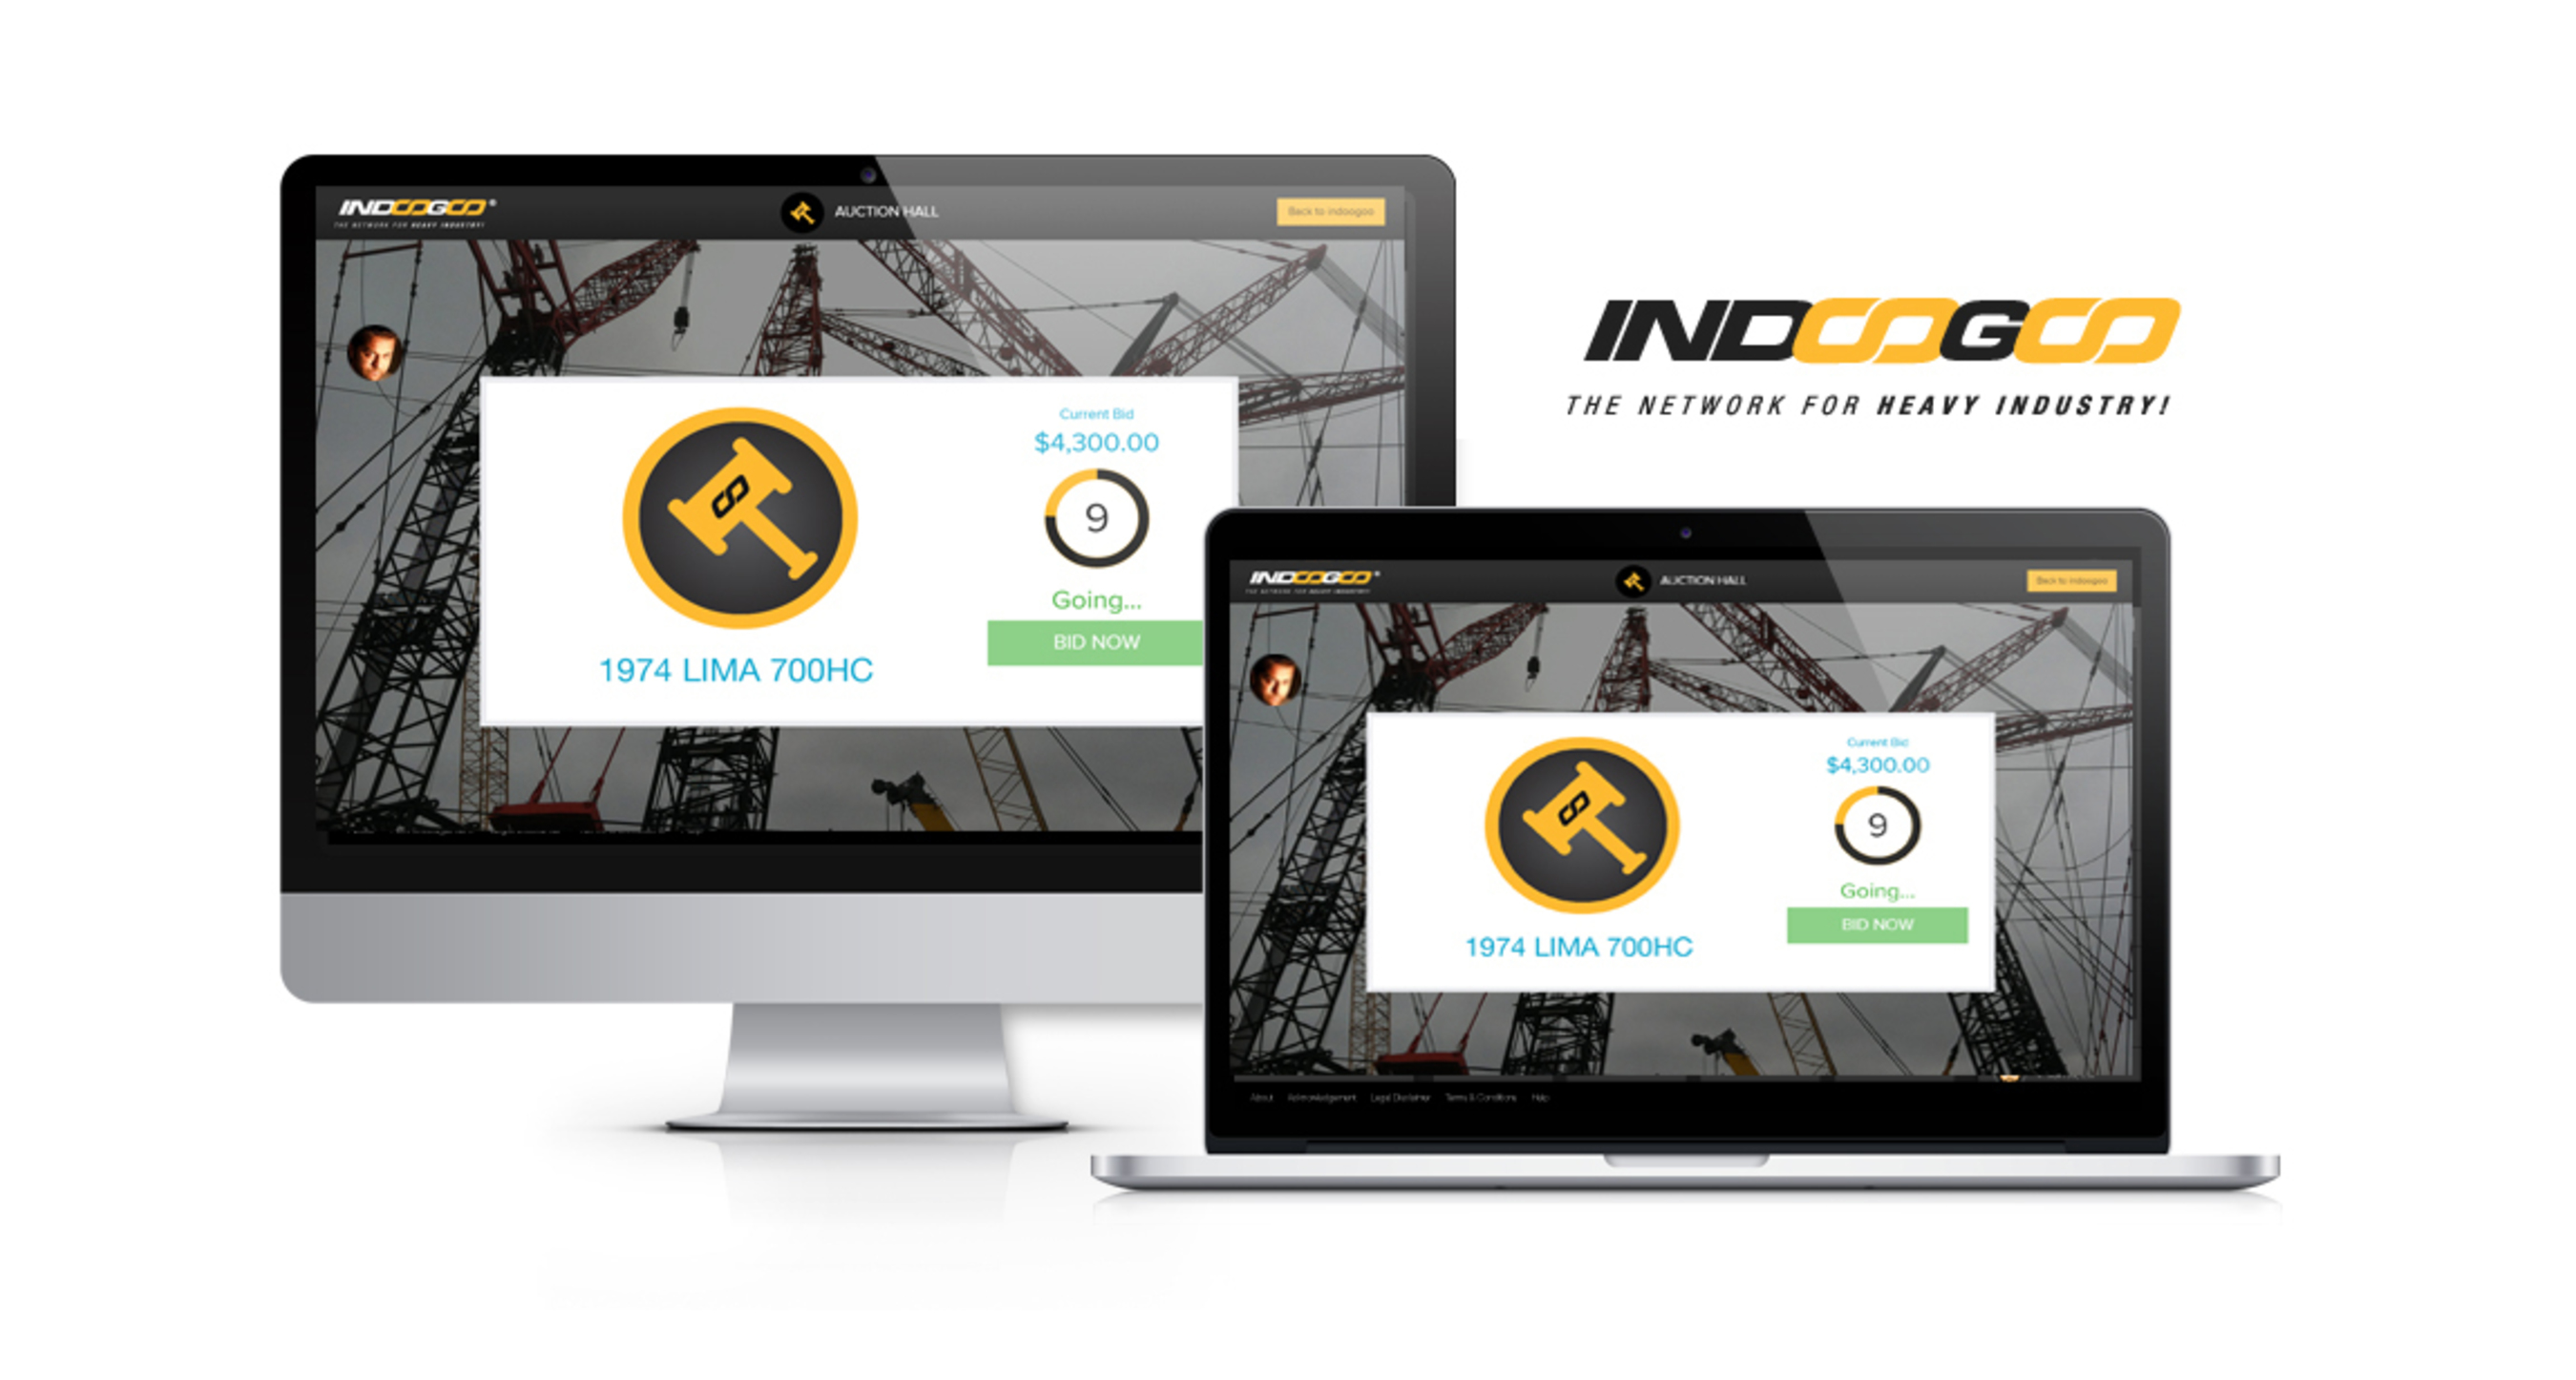 Indoogoo: the network for heavy industry (PRNewsFoto/Indoogoo)